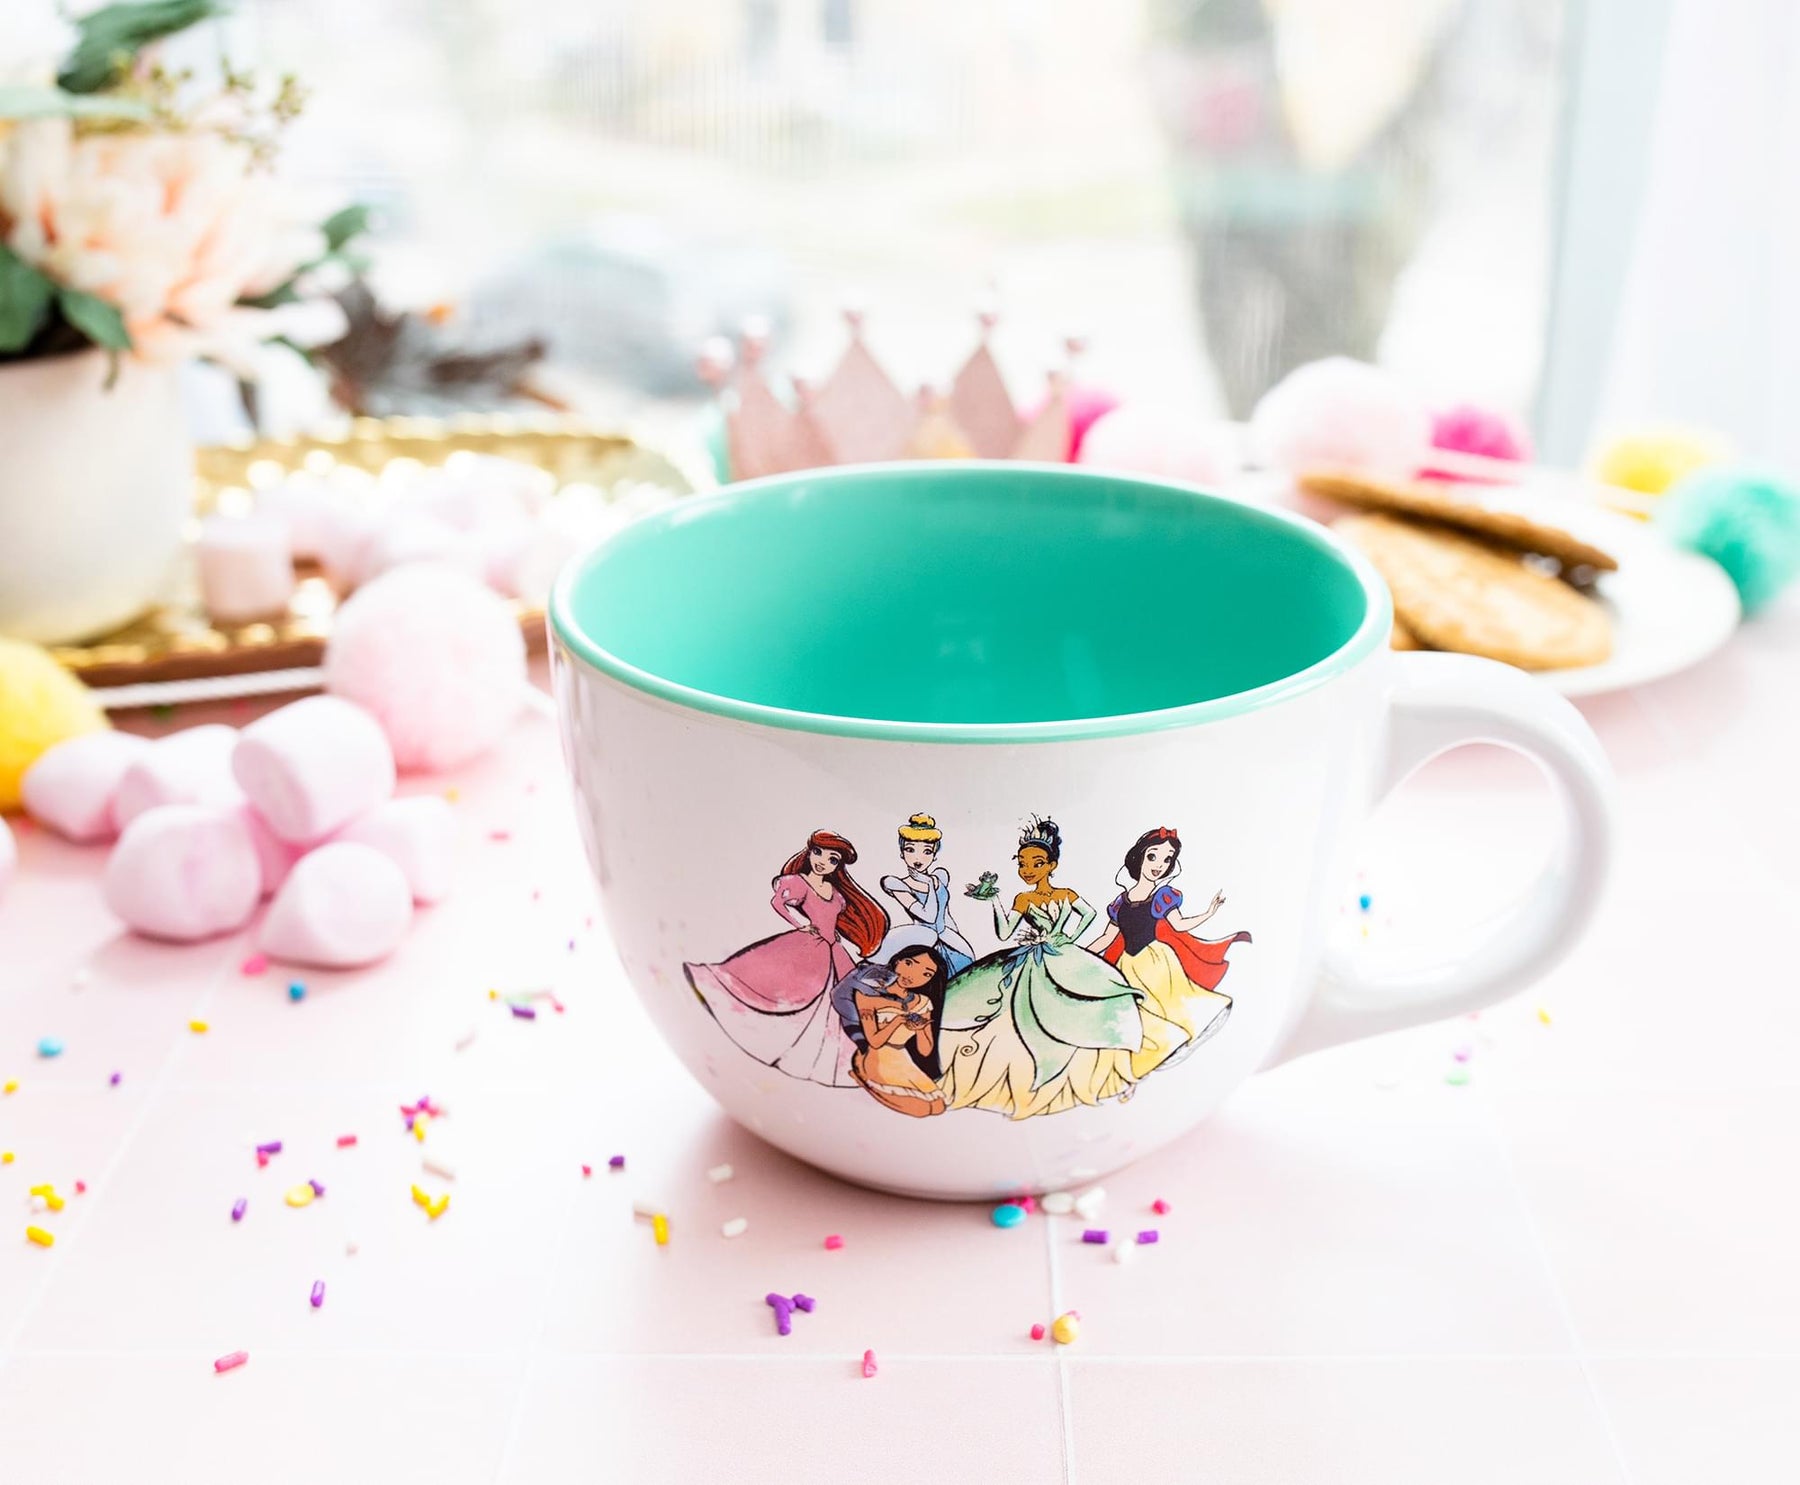 Disney Princess Collage 14 oz. Ceramic Mug